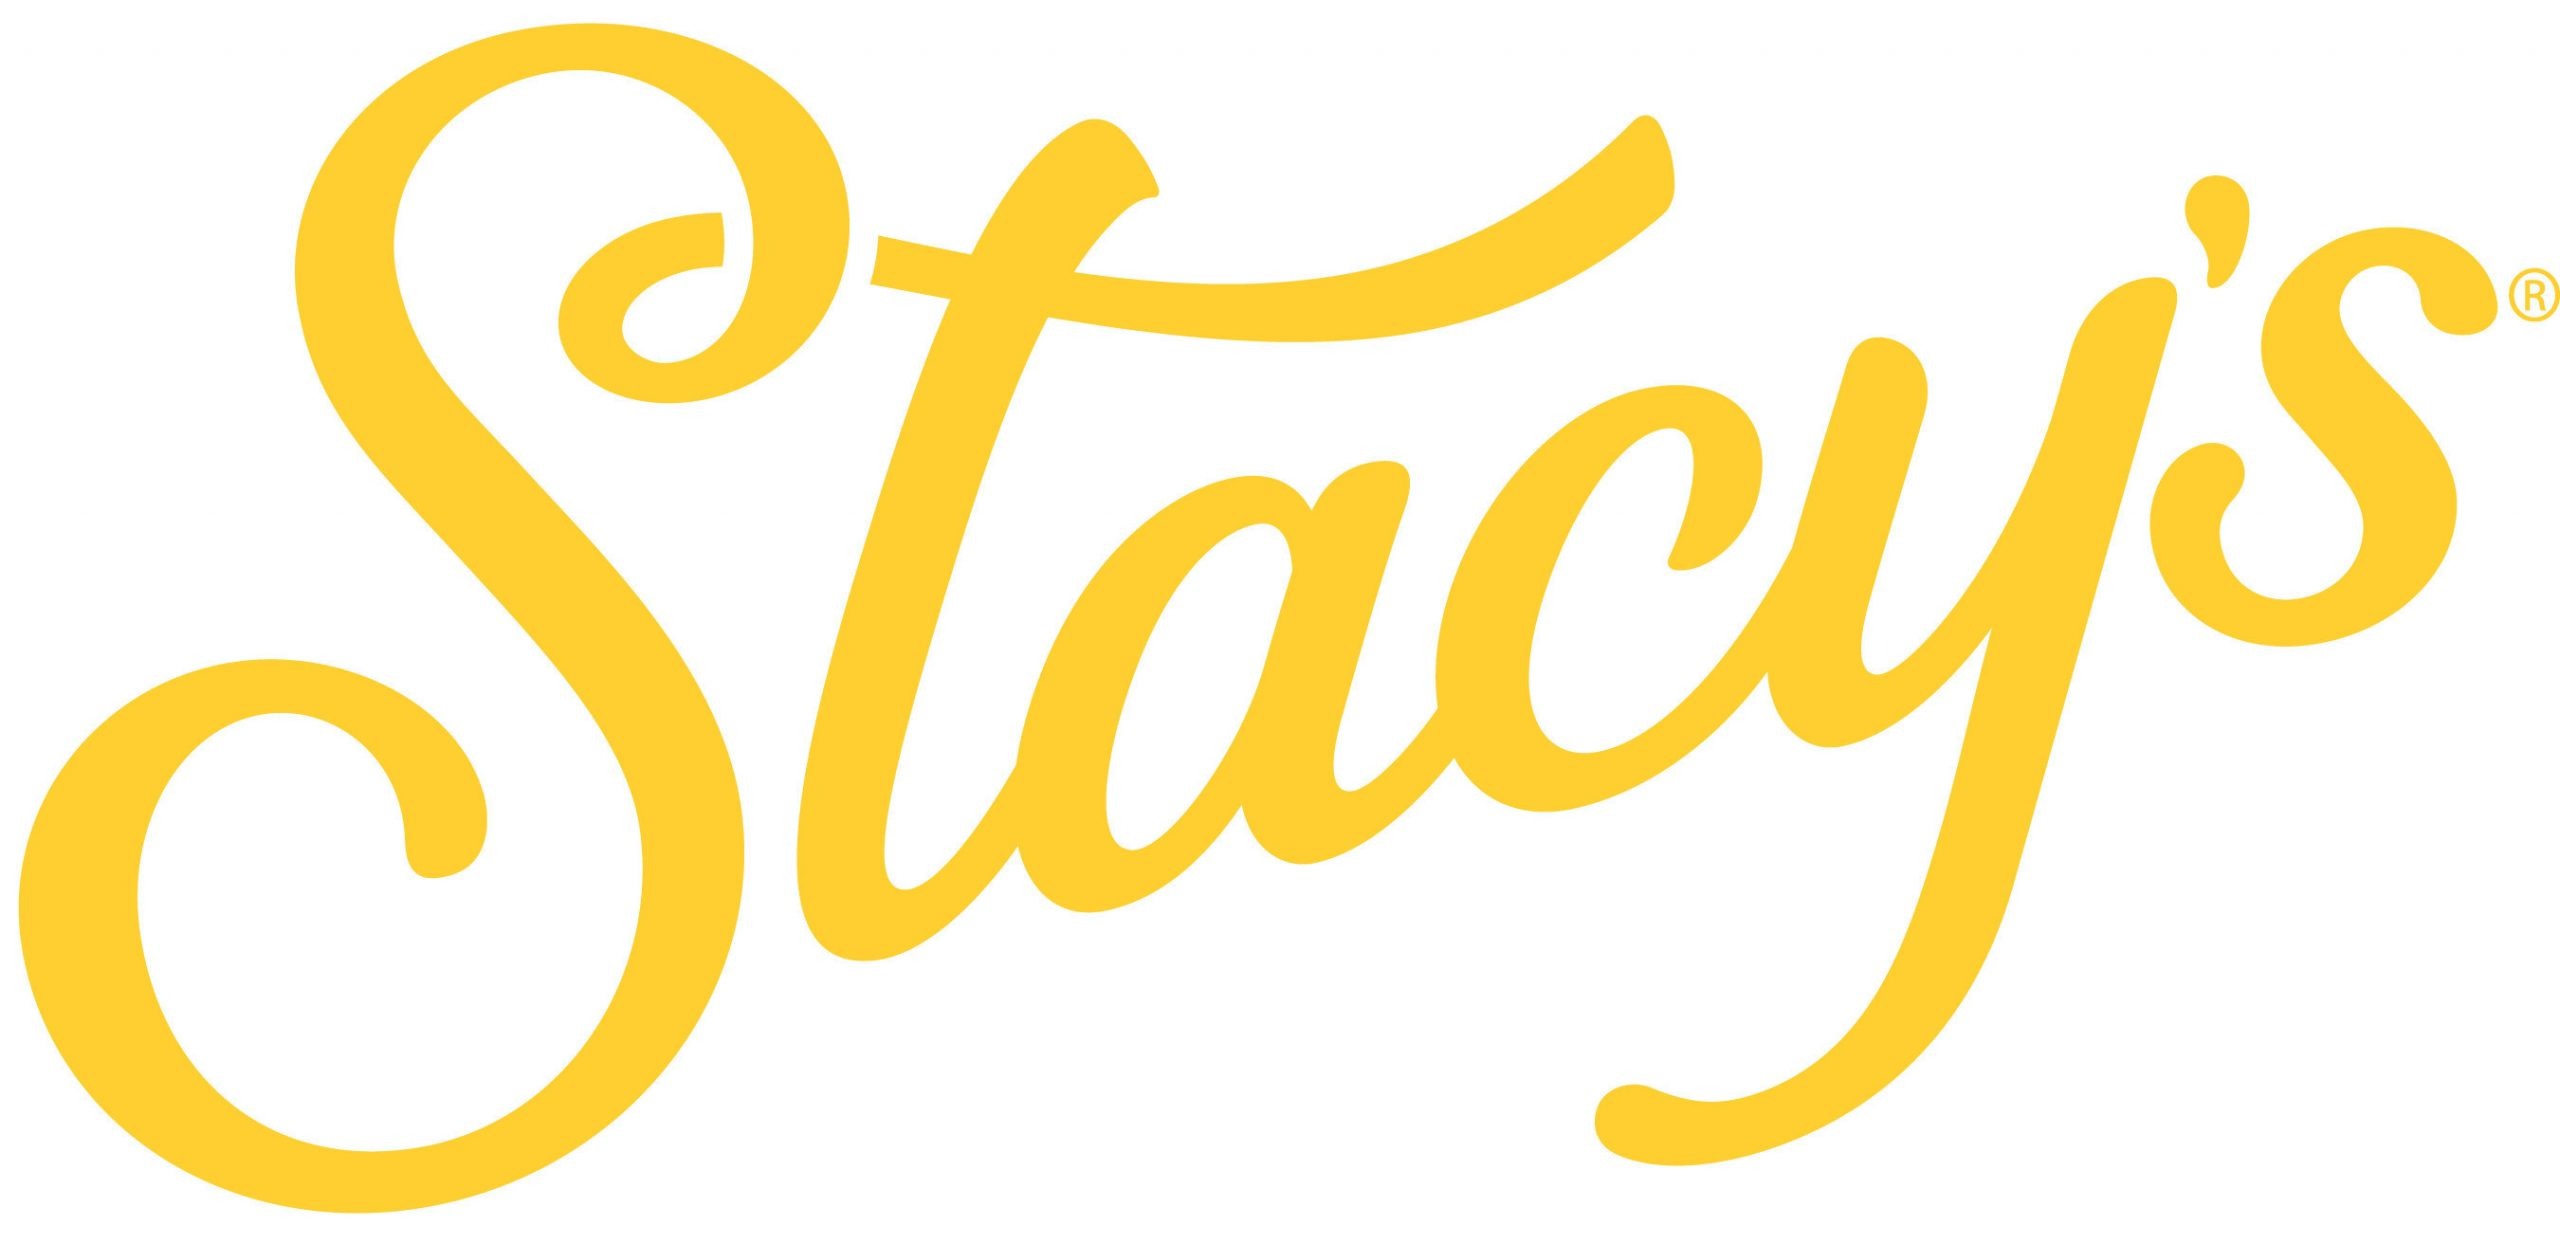 Stacys Logo scaled